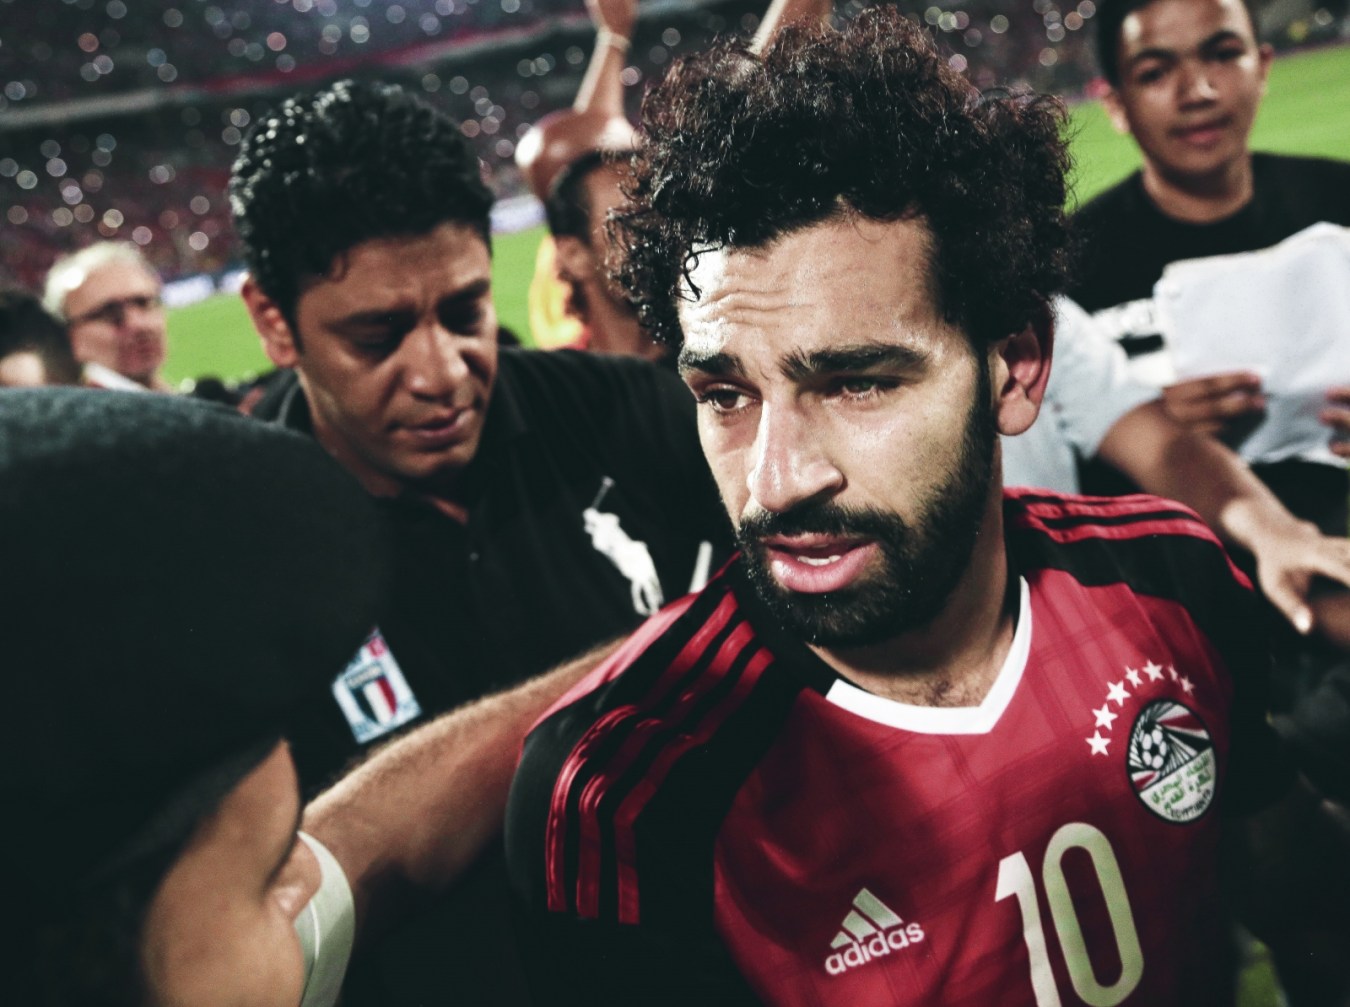 مصر-جام جهانی 2018 روسیه-آفریقا